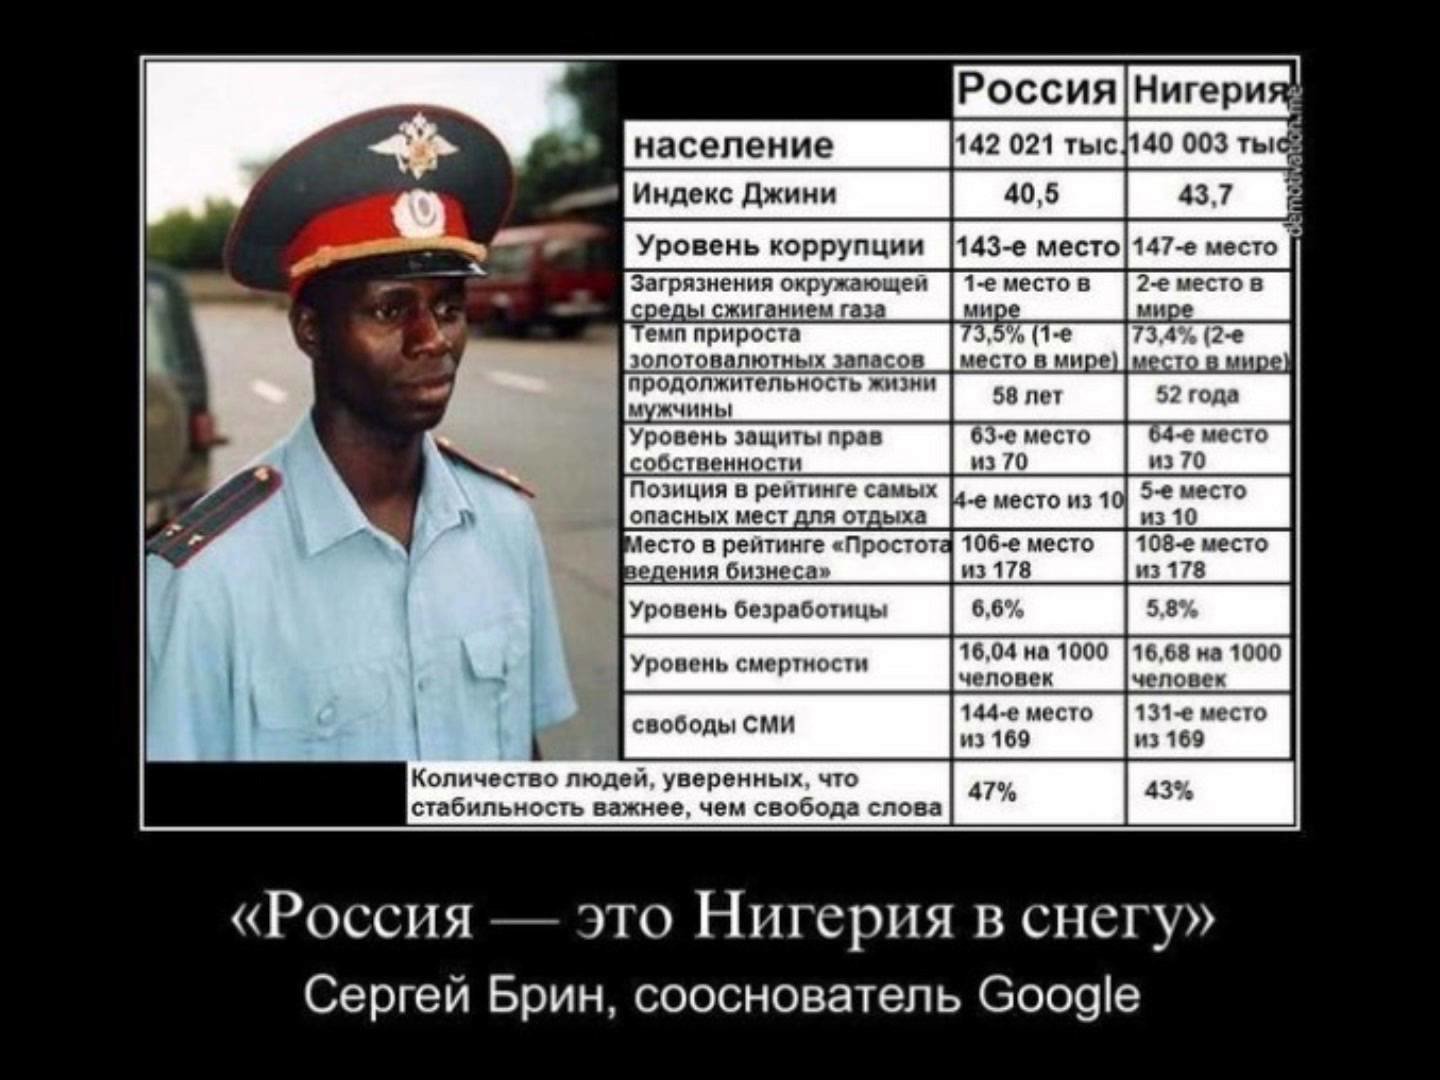 сравнение русских и негров (120) фото